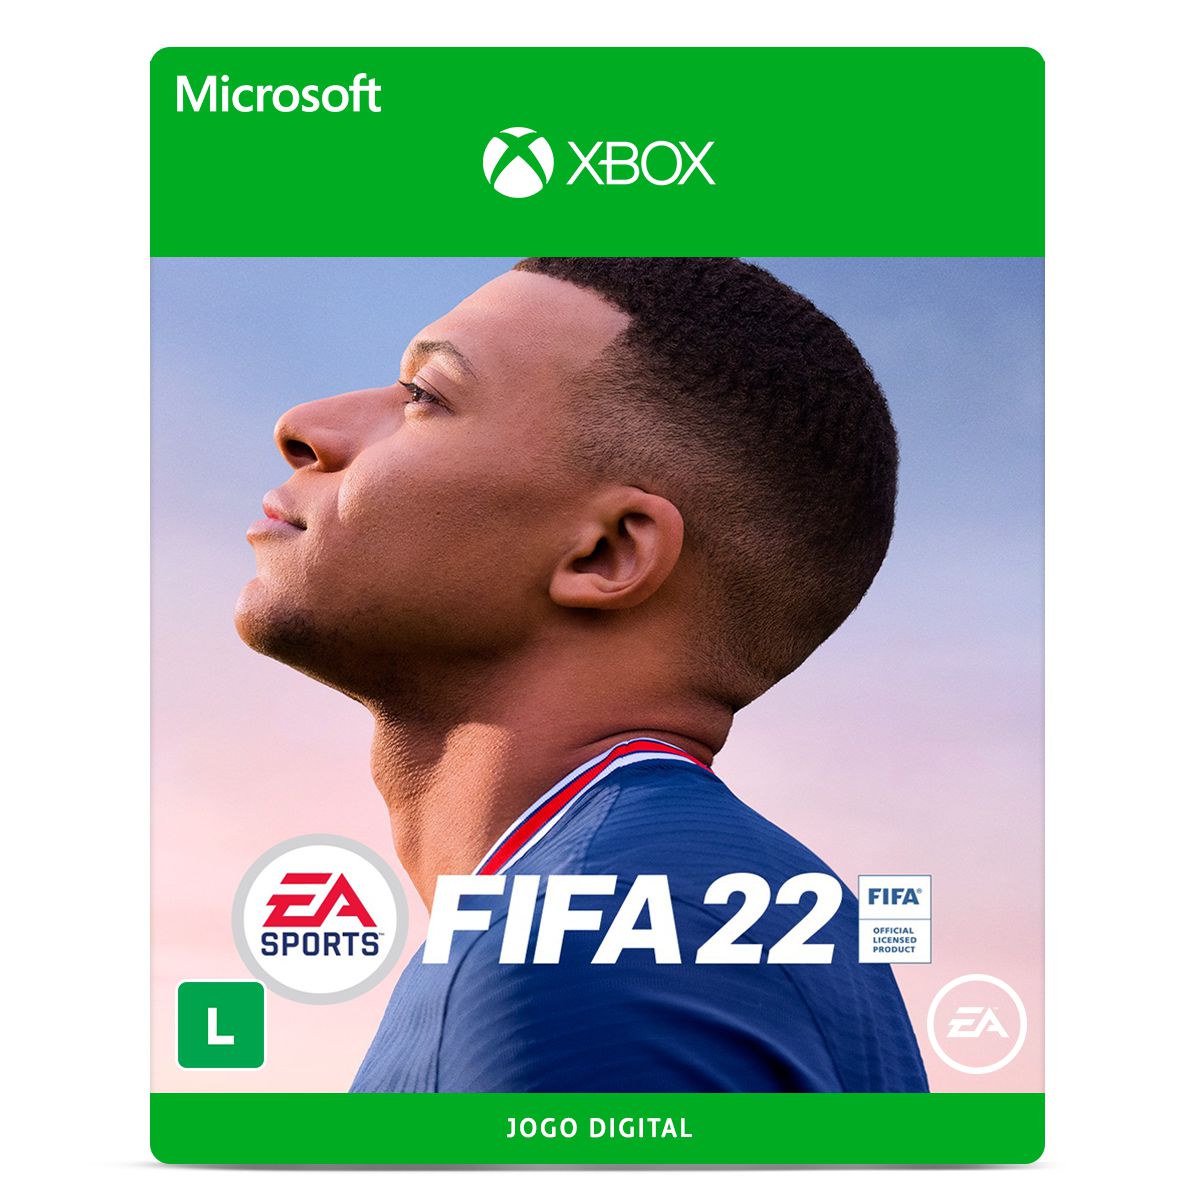 Novas ofertas da Steam tem FIFA 23 por R$ 89, F1 22 por R$ 39 e